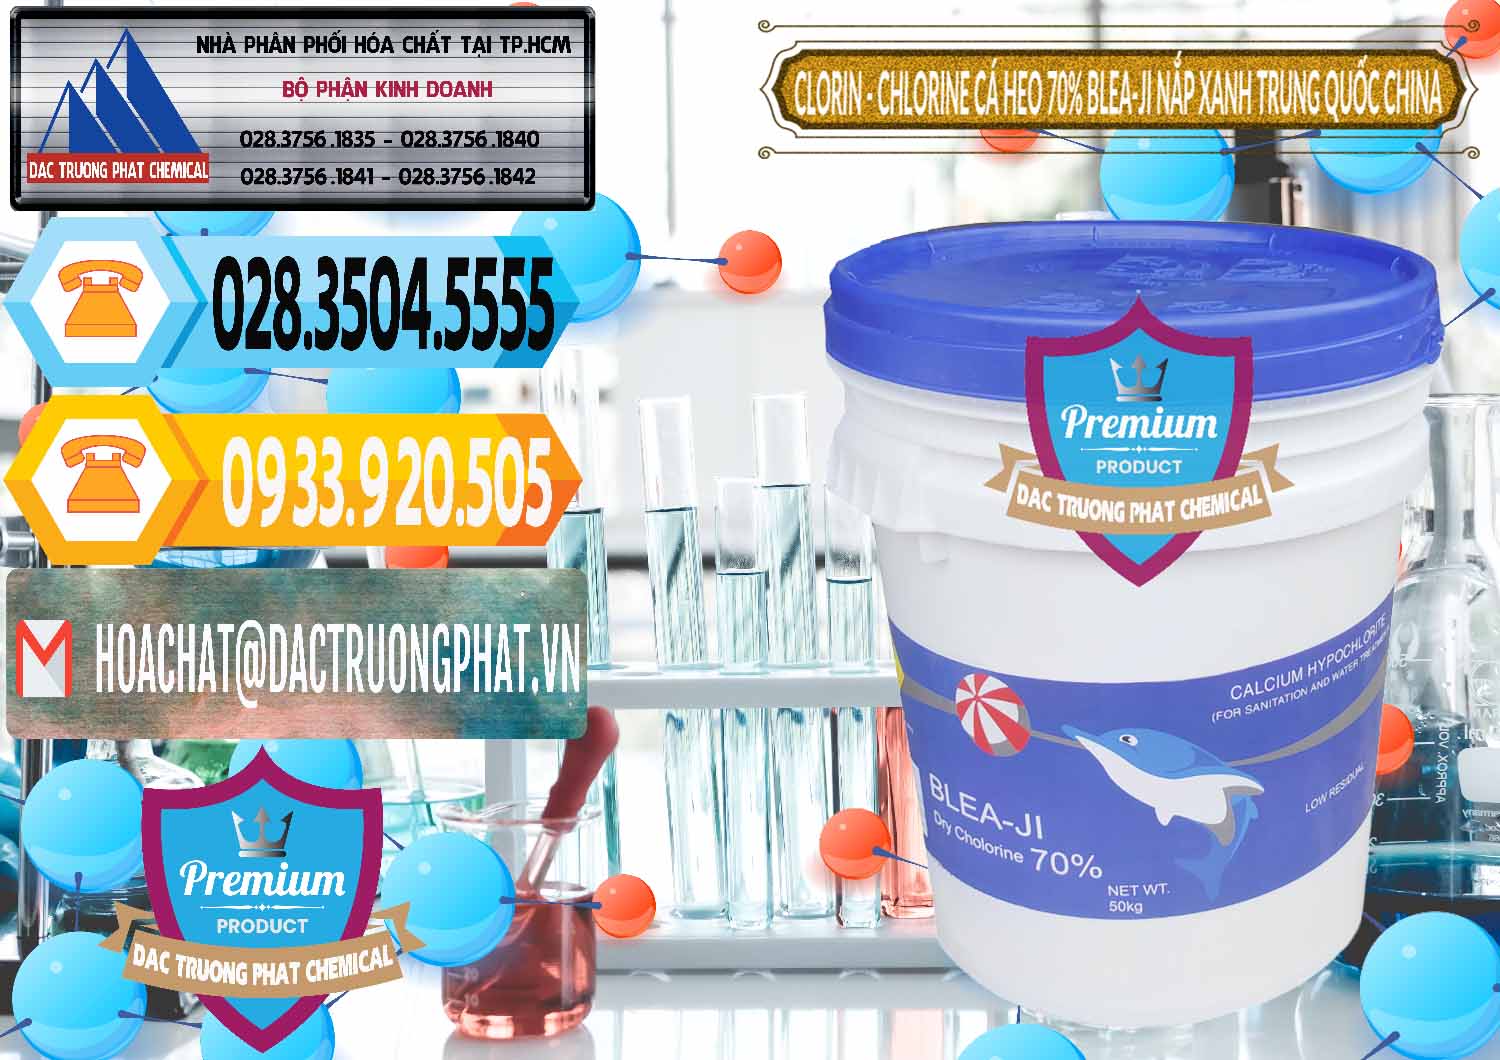 Nơi bán & cung ứng Clorin - Chlorine Cá Heo 70% Cá Heo Blea-Ji Thùng Tròn Nắp Xanh Trung Quốc China - 0208 - Cty chuyên bán và phân phối hóa chất tại TP.HCM - hoachattayrua.net